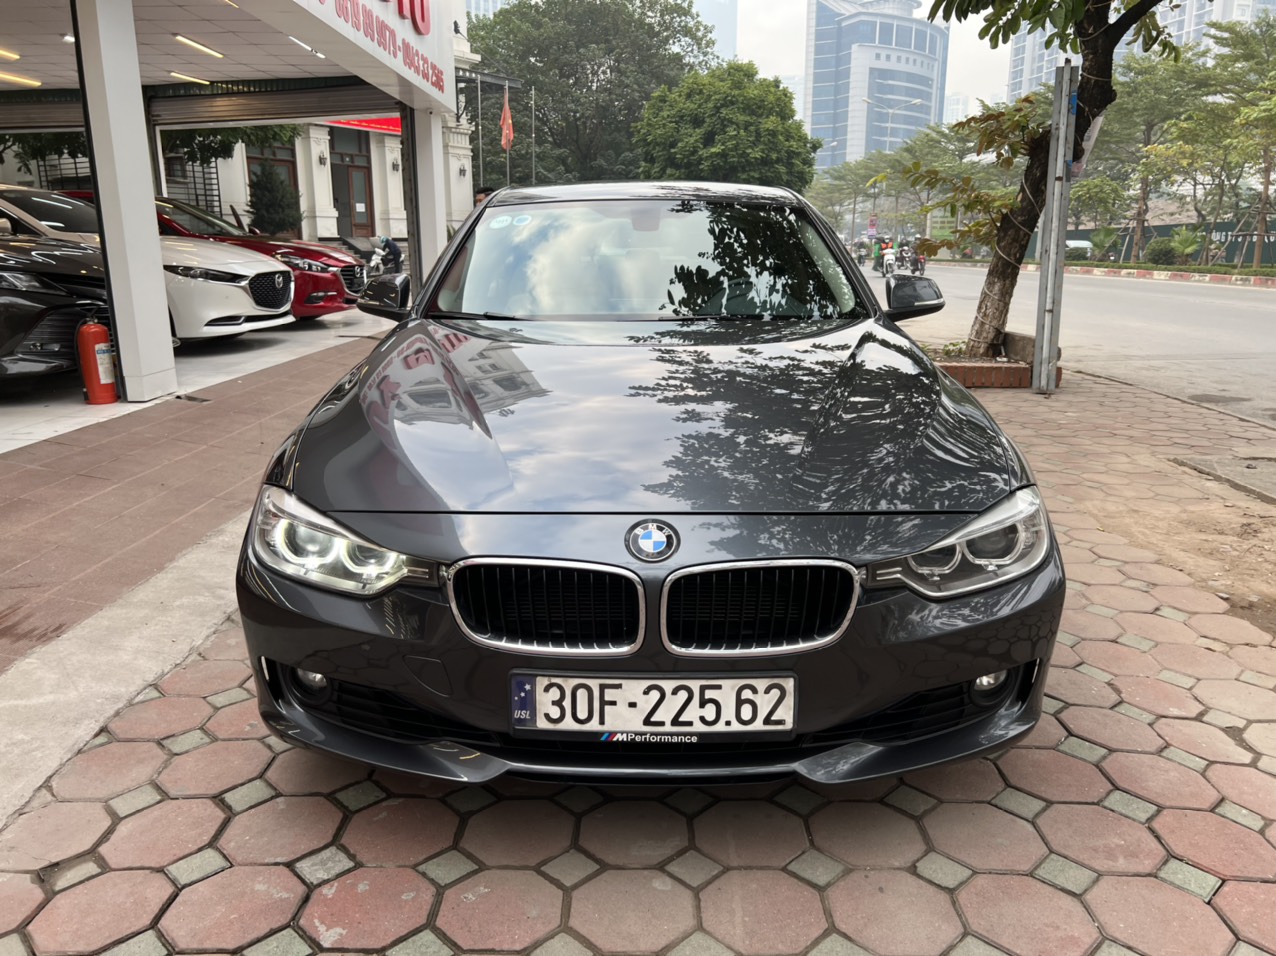 Mua bán xe ô tô BMW cũ tại Hồ Chí Minh  F2AutoSaiGon